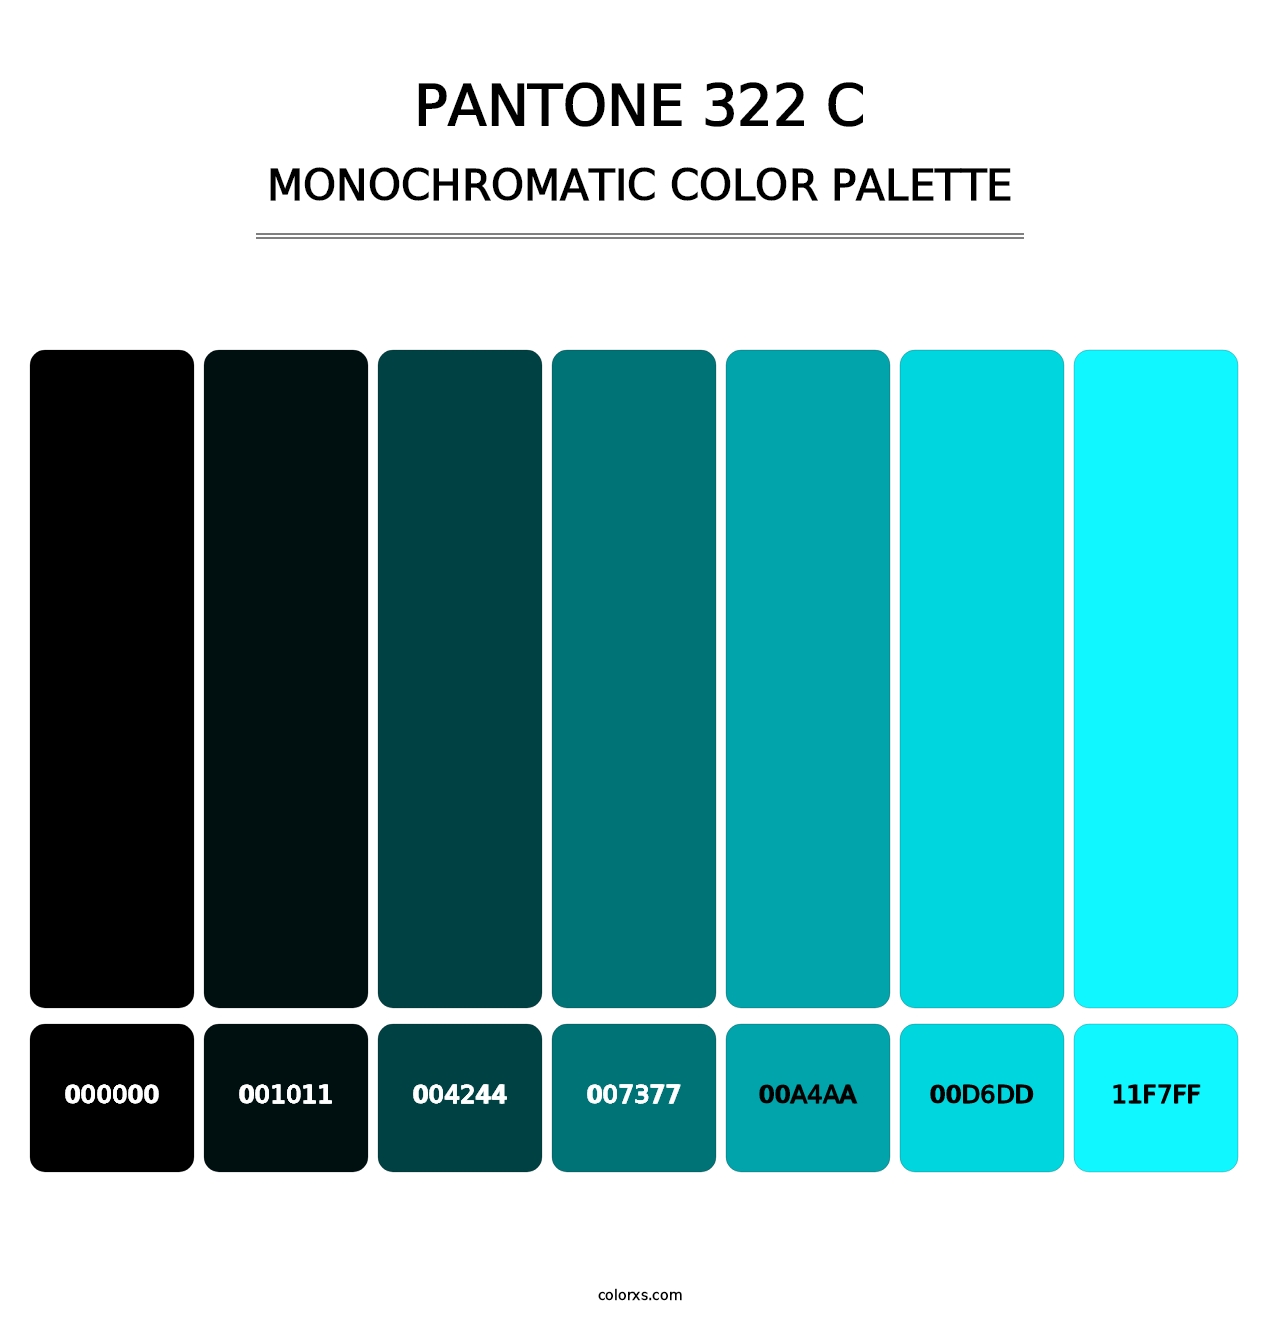 PANTONE 322 C - Monochromatic Color Palette